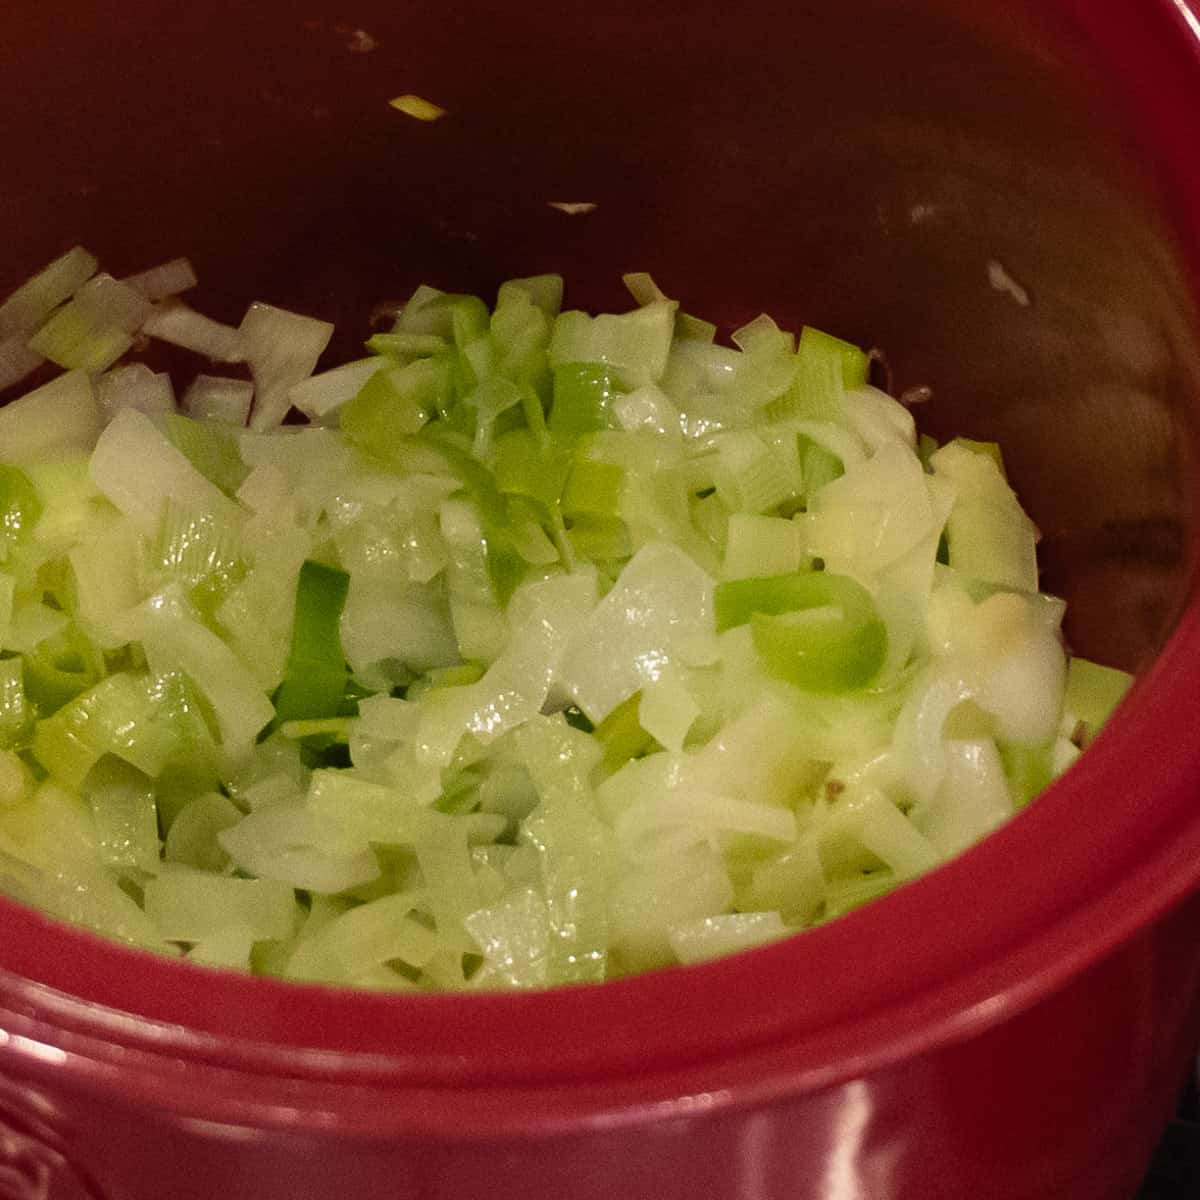 Sauté the onion and leeks in a soup pot until caramelized.